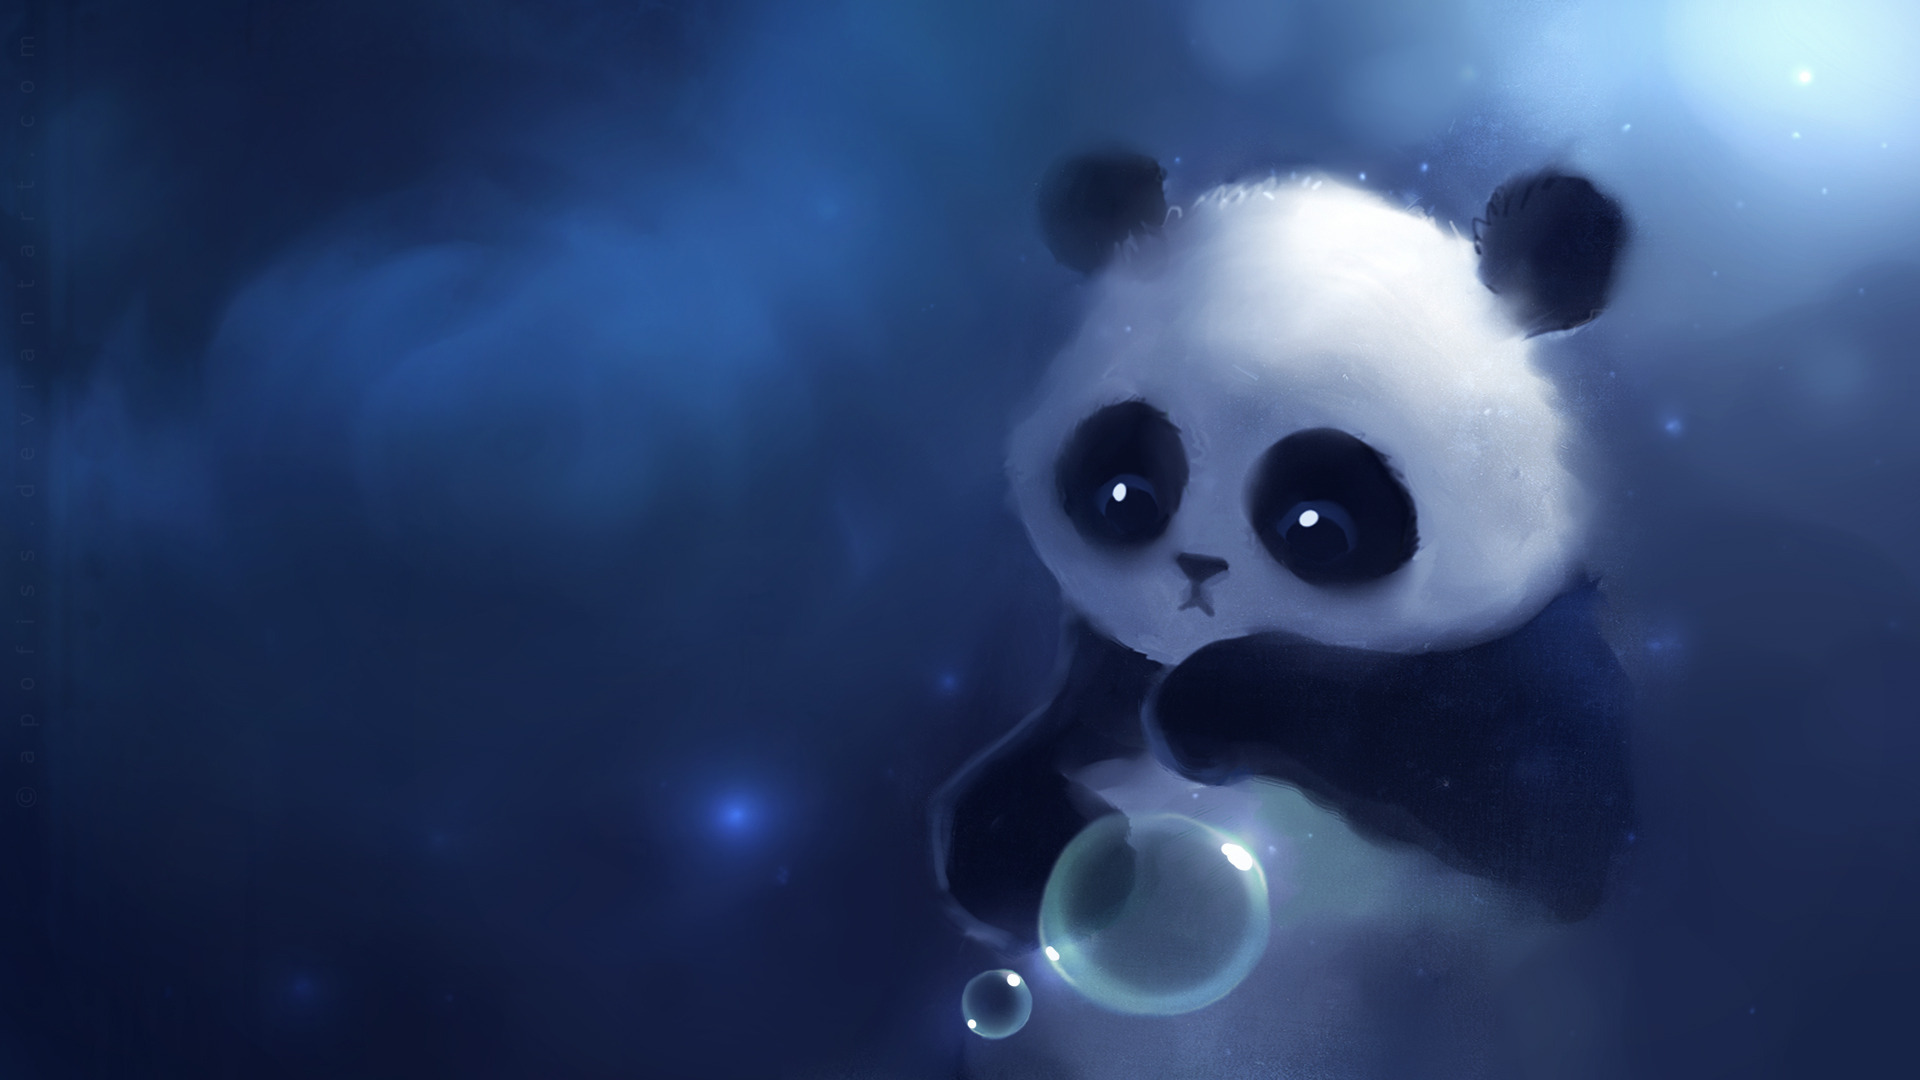 Cute Panda Painting Wallpaper